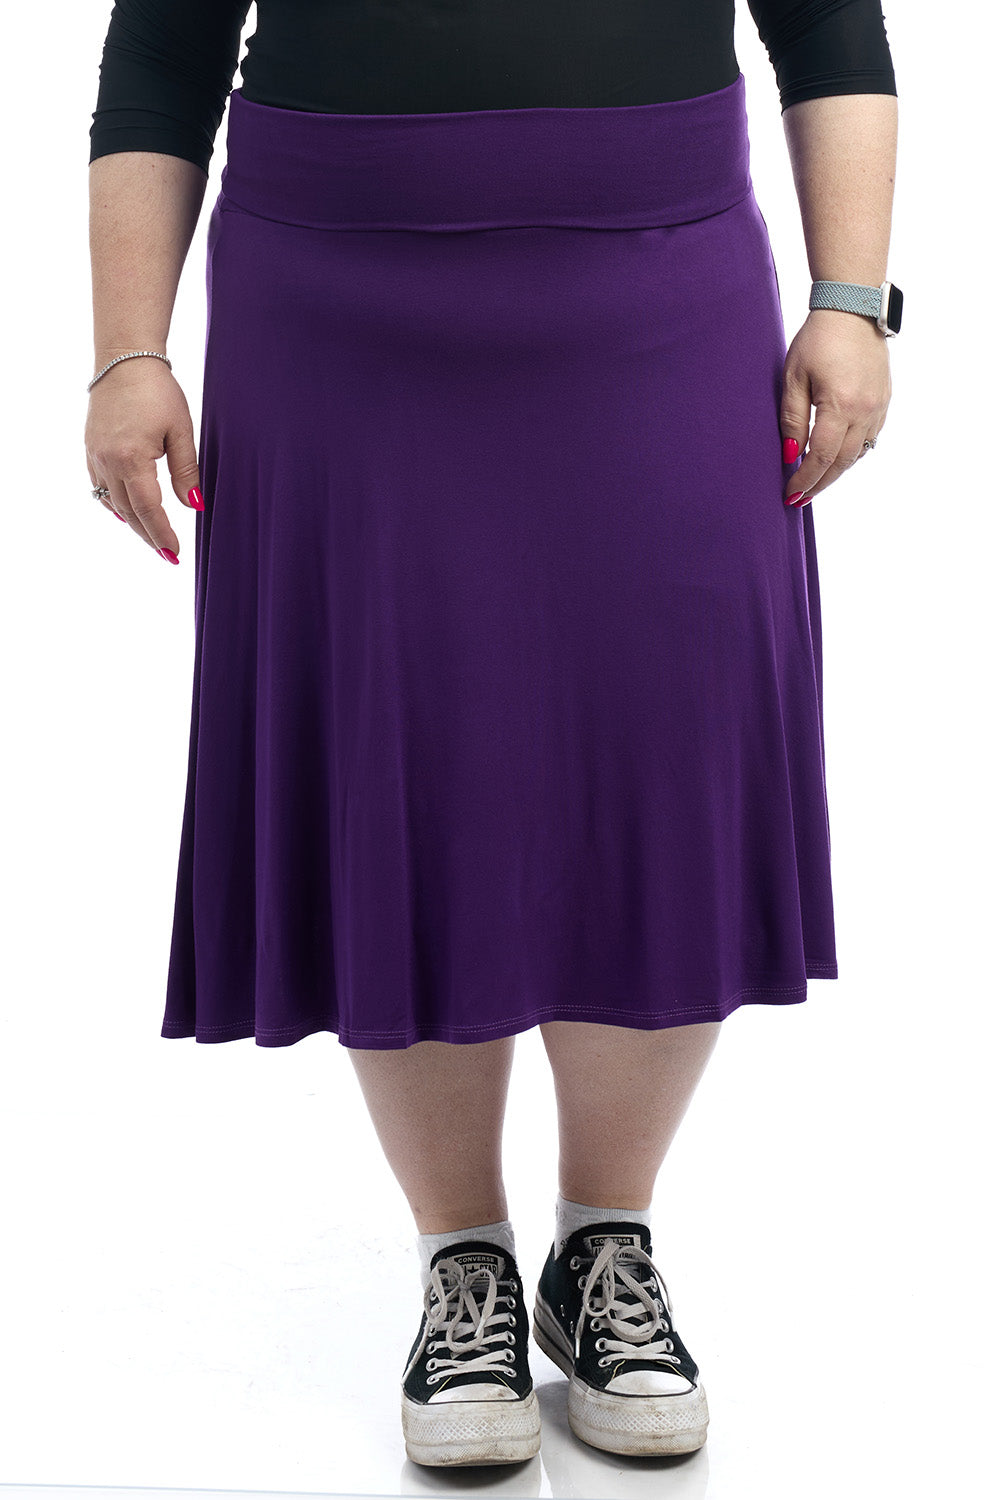 Plus size Old Navy inspired foldover flary knee length midi purple skirt